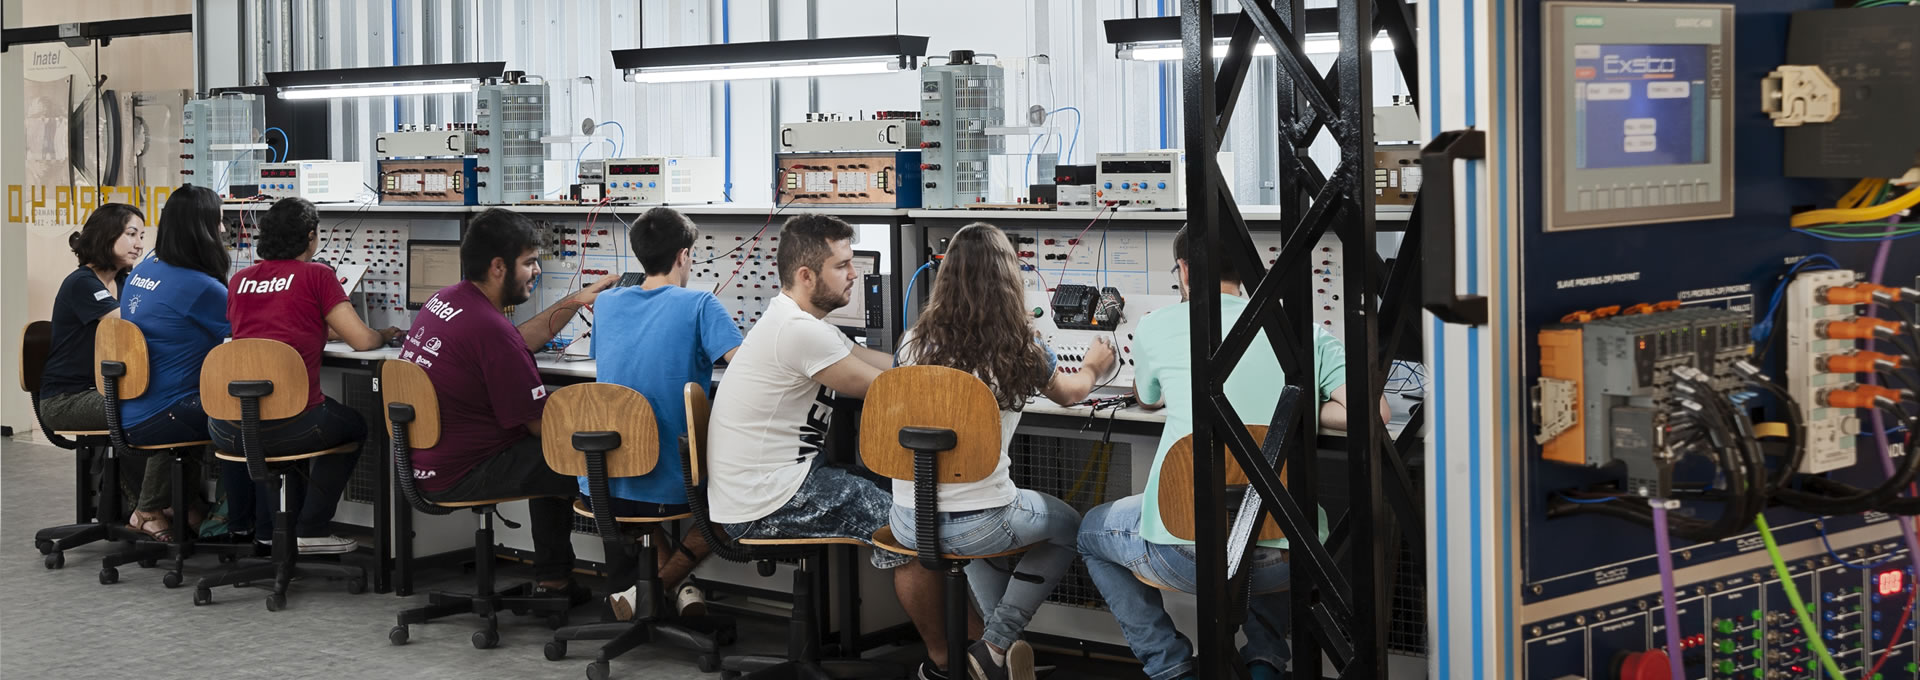 Laboratório de Automação (Indústria 4.0) do Inatel em Santa Rita do Sapucaí | Imagem Ilustrativa